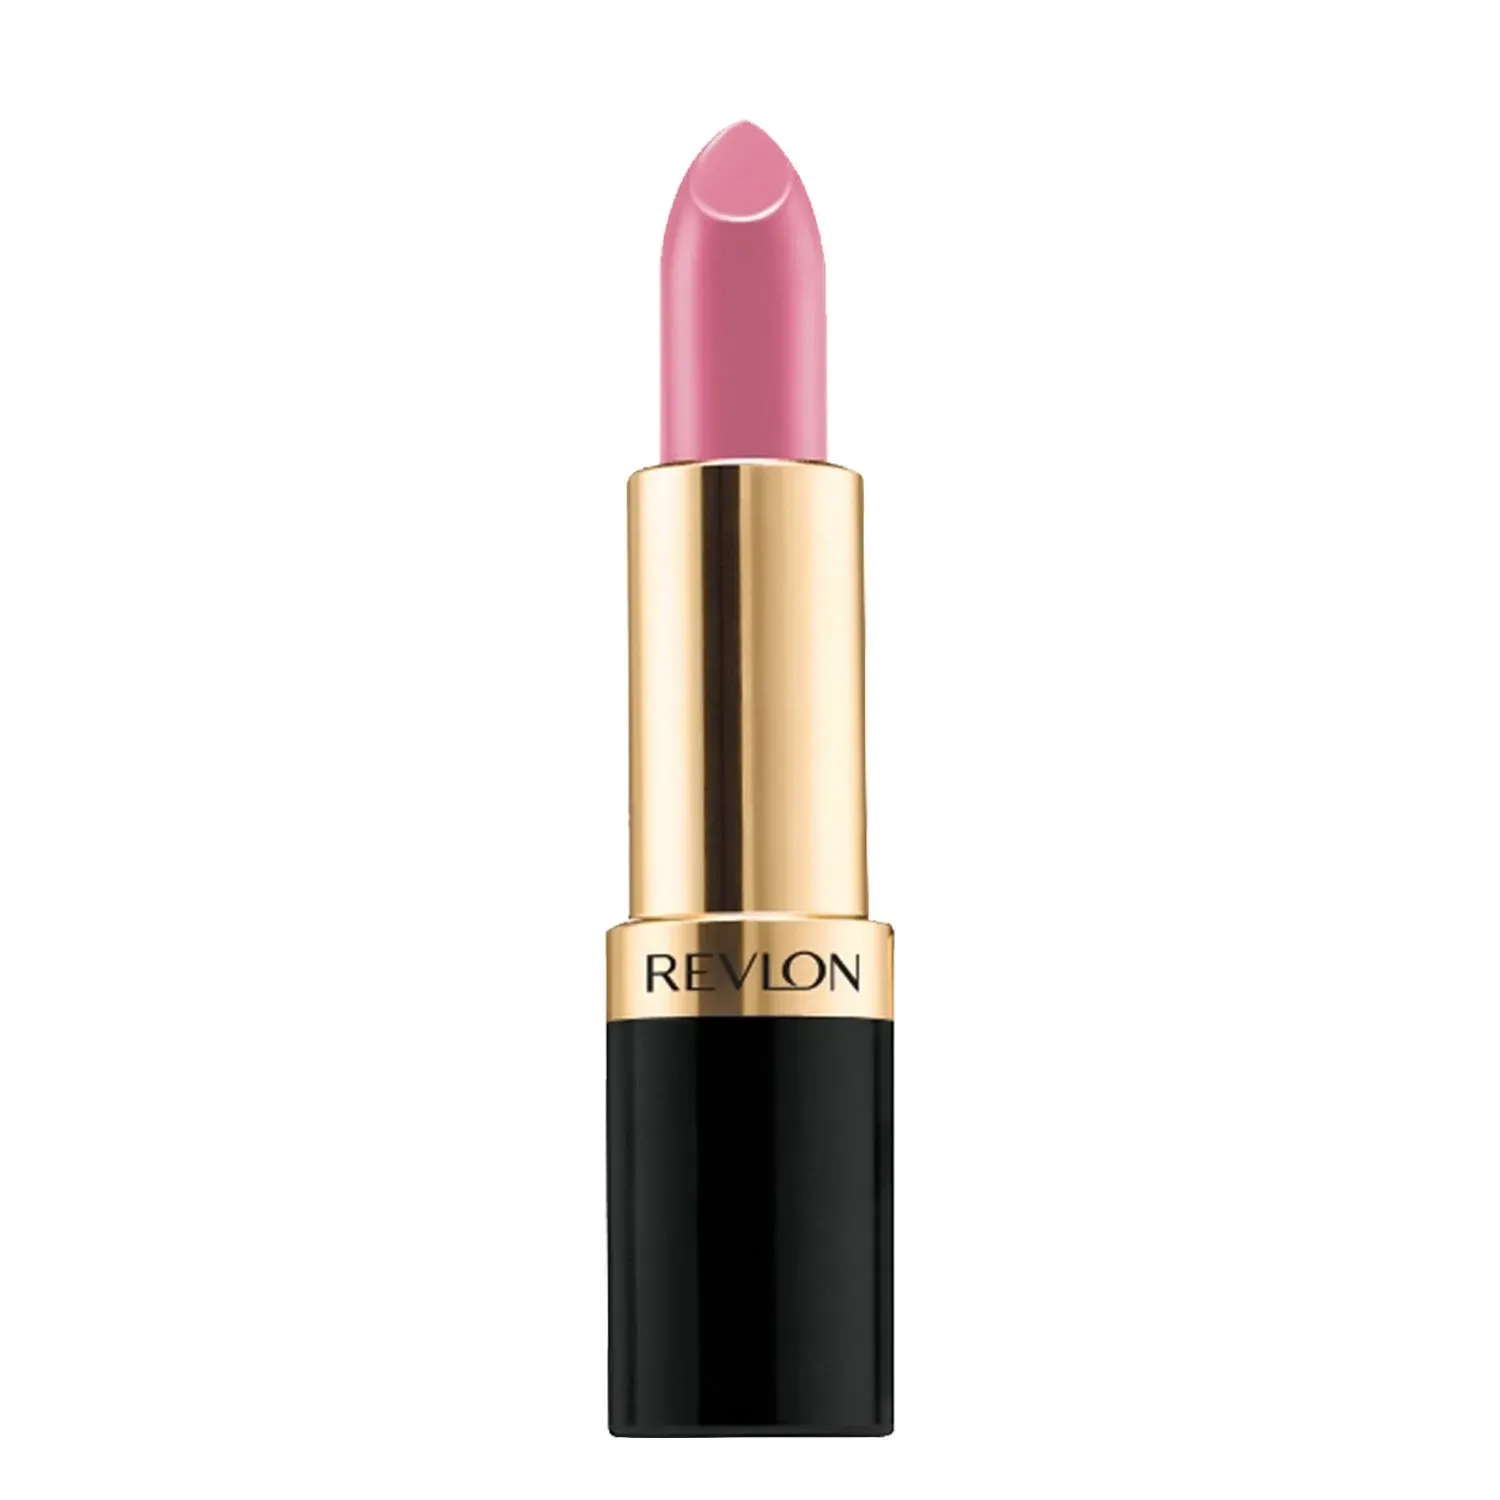 Revlon | Revlon Super Lustrous Lipstick - Audacious Mauve (4.2g)